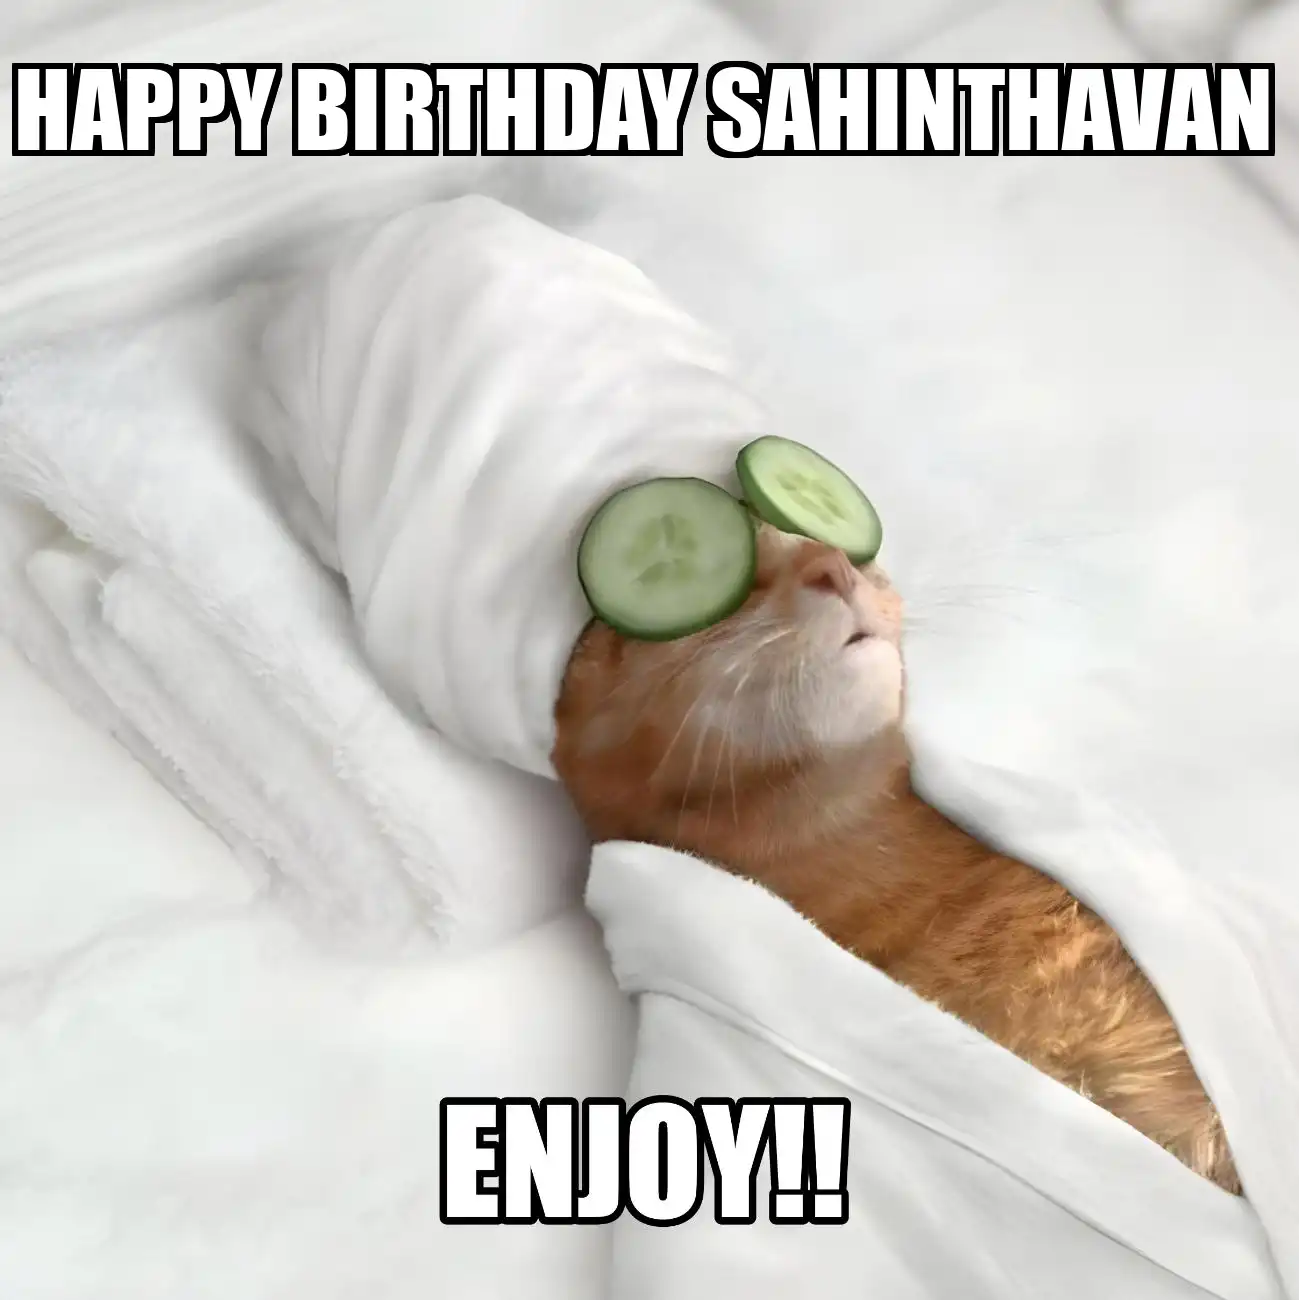 Happy Birthday Sahinthavan Enjoy Cat Meme